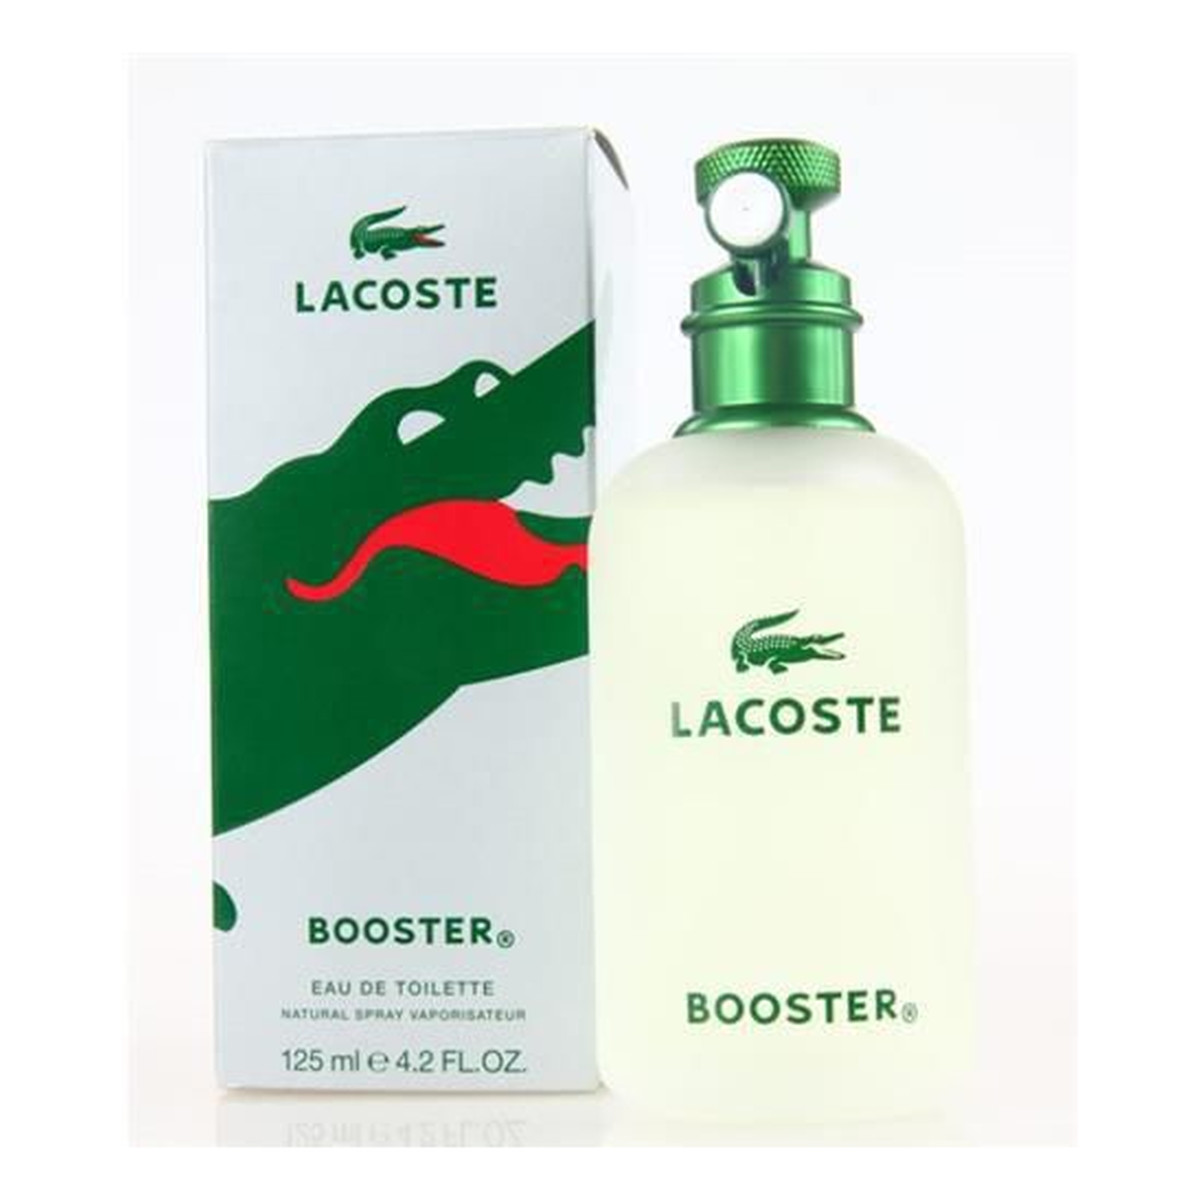 Lacoste Booster woda toaletowa dla mężczyzn 125ml